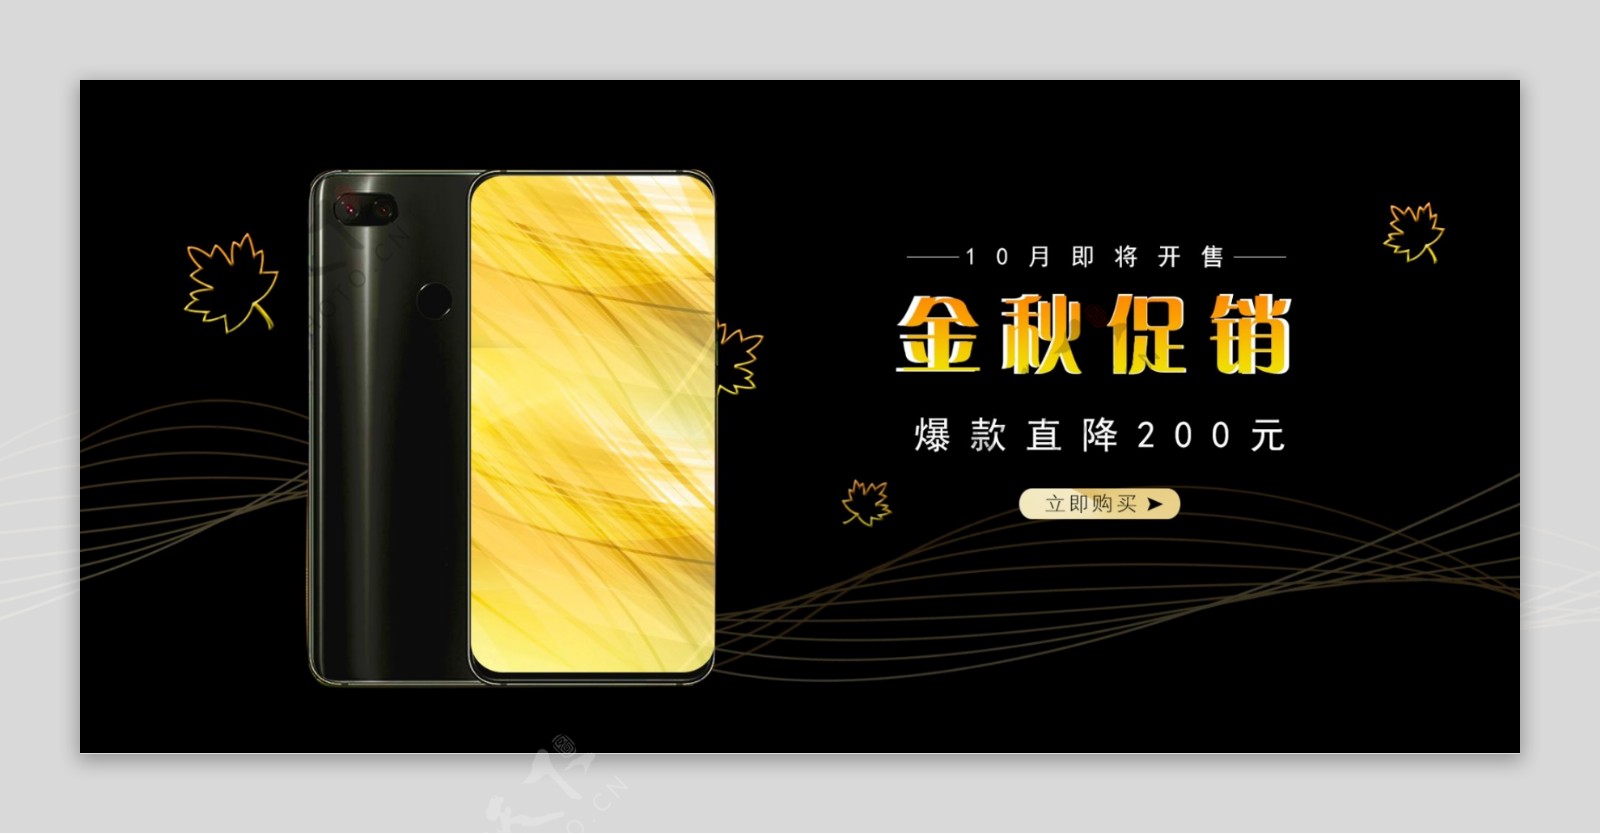 天猫淘宝秋季促销黑金色手机电器活动海报